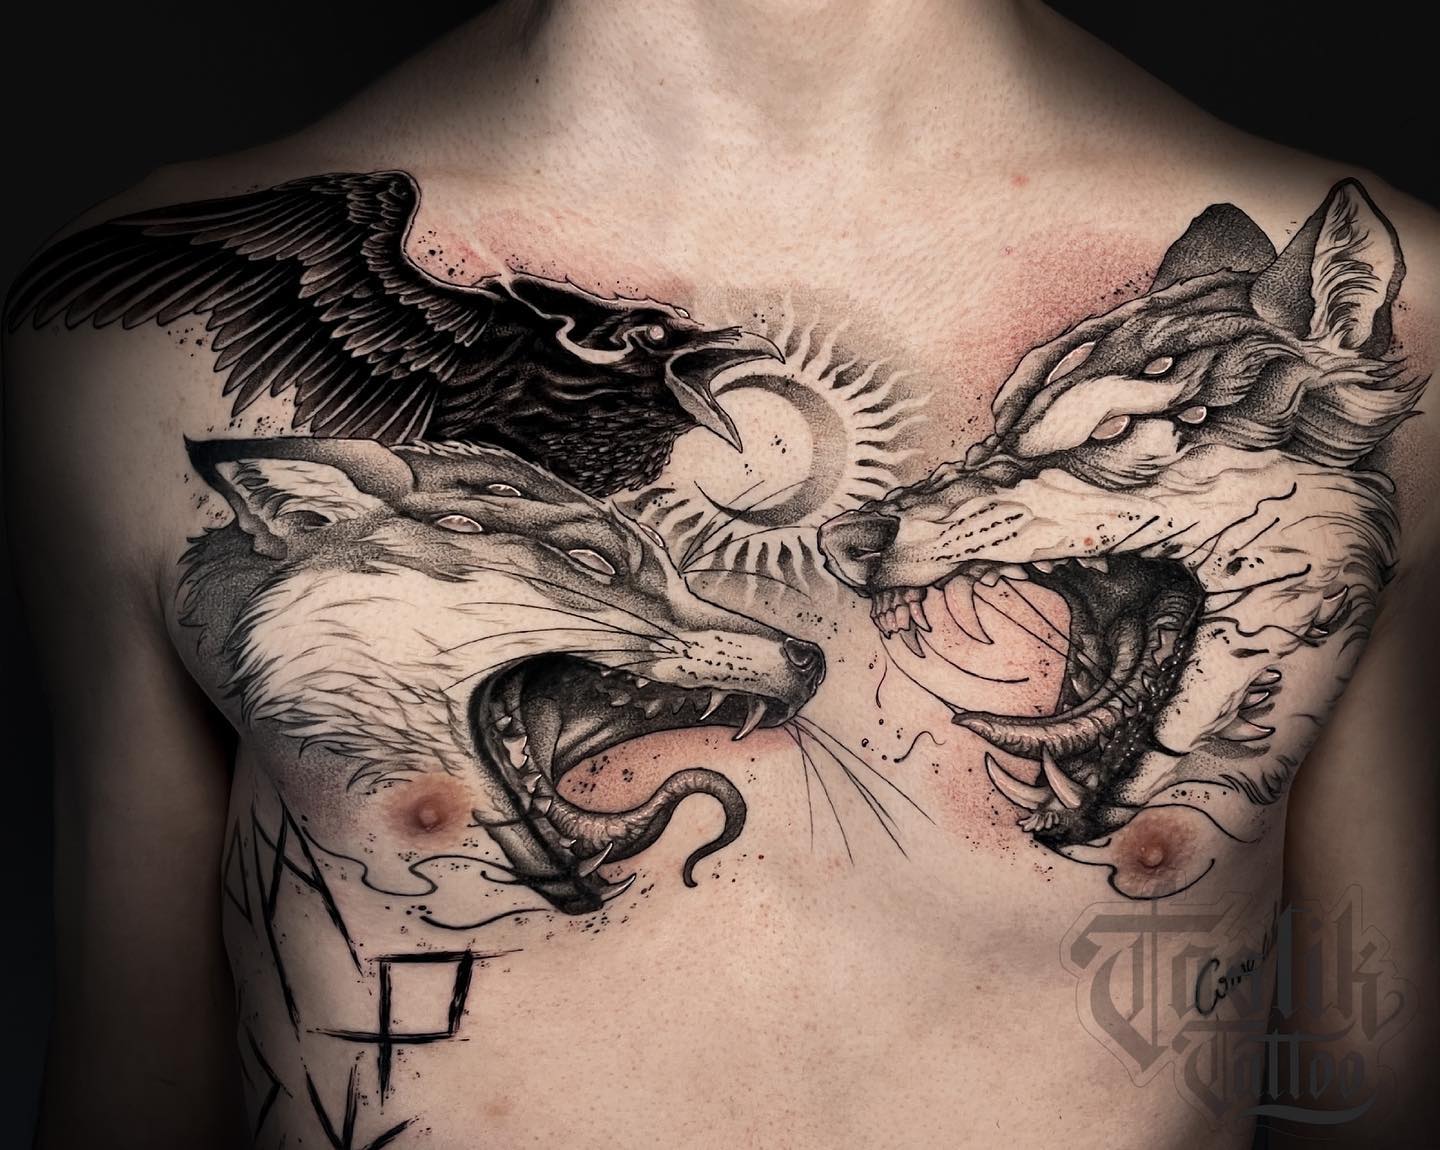 Tatuaje de lobo en el pecho